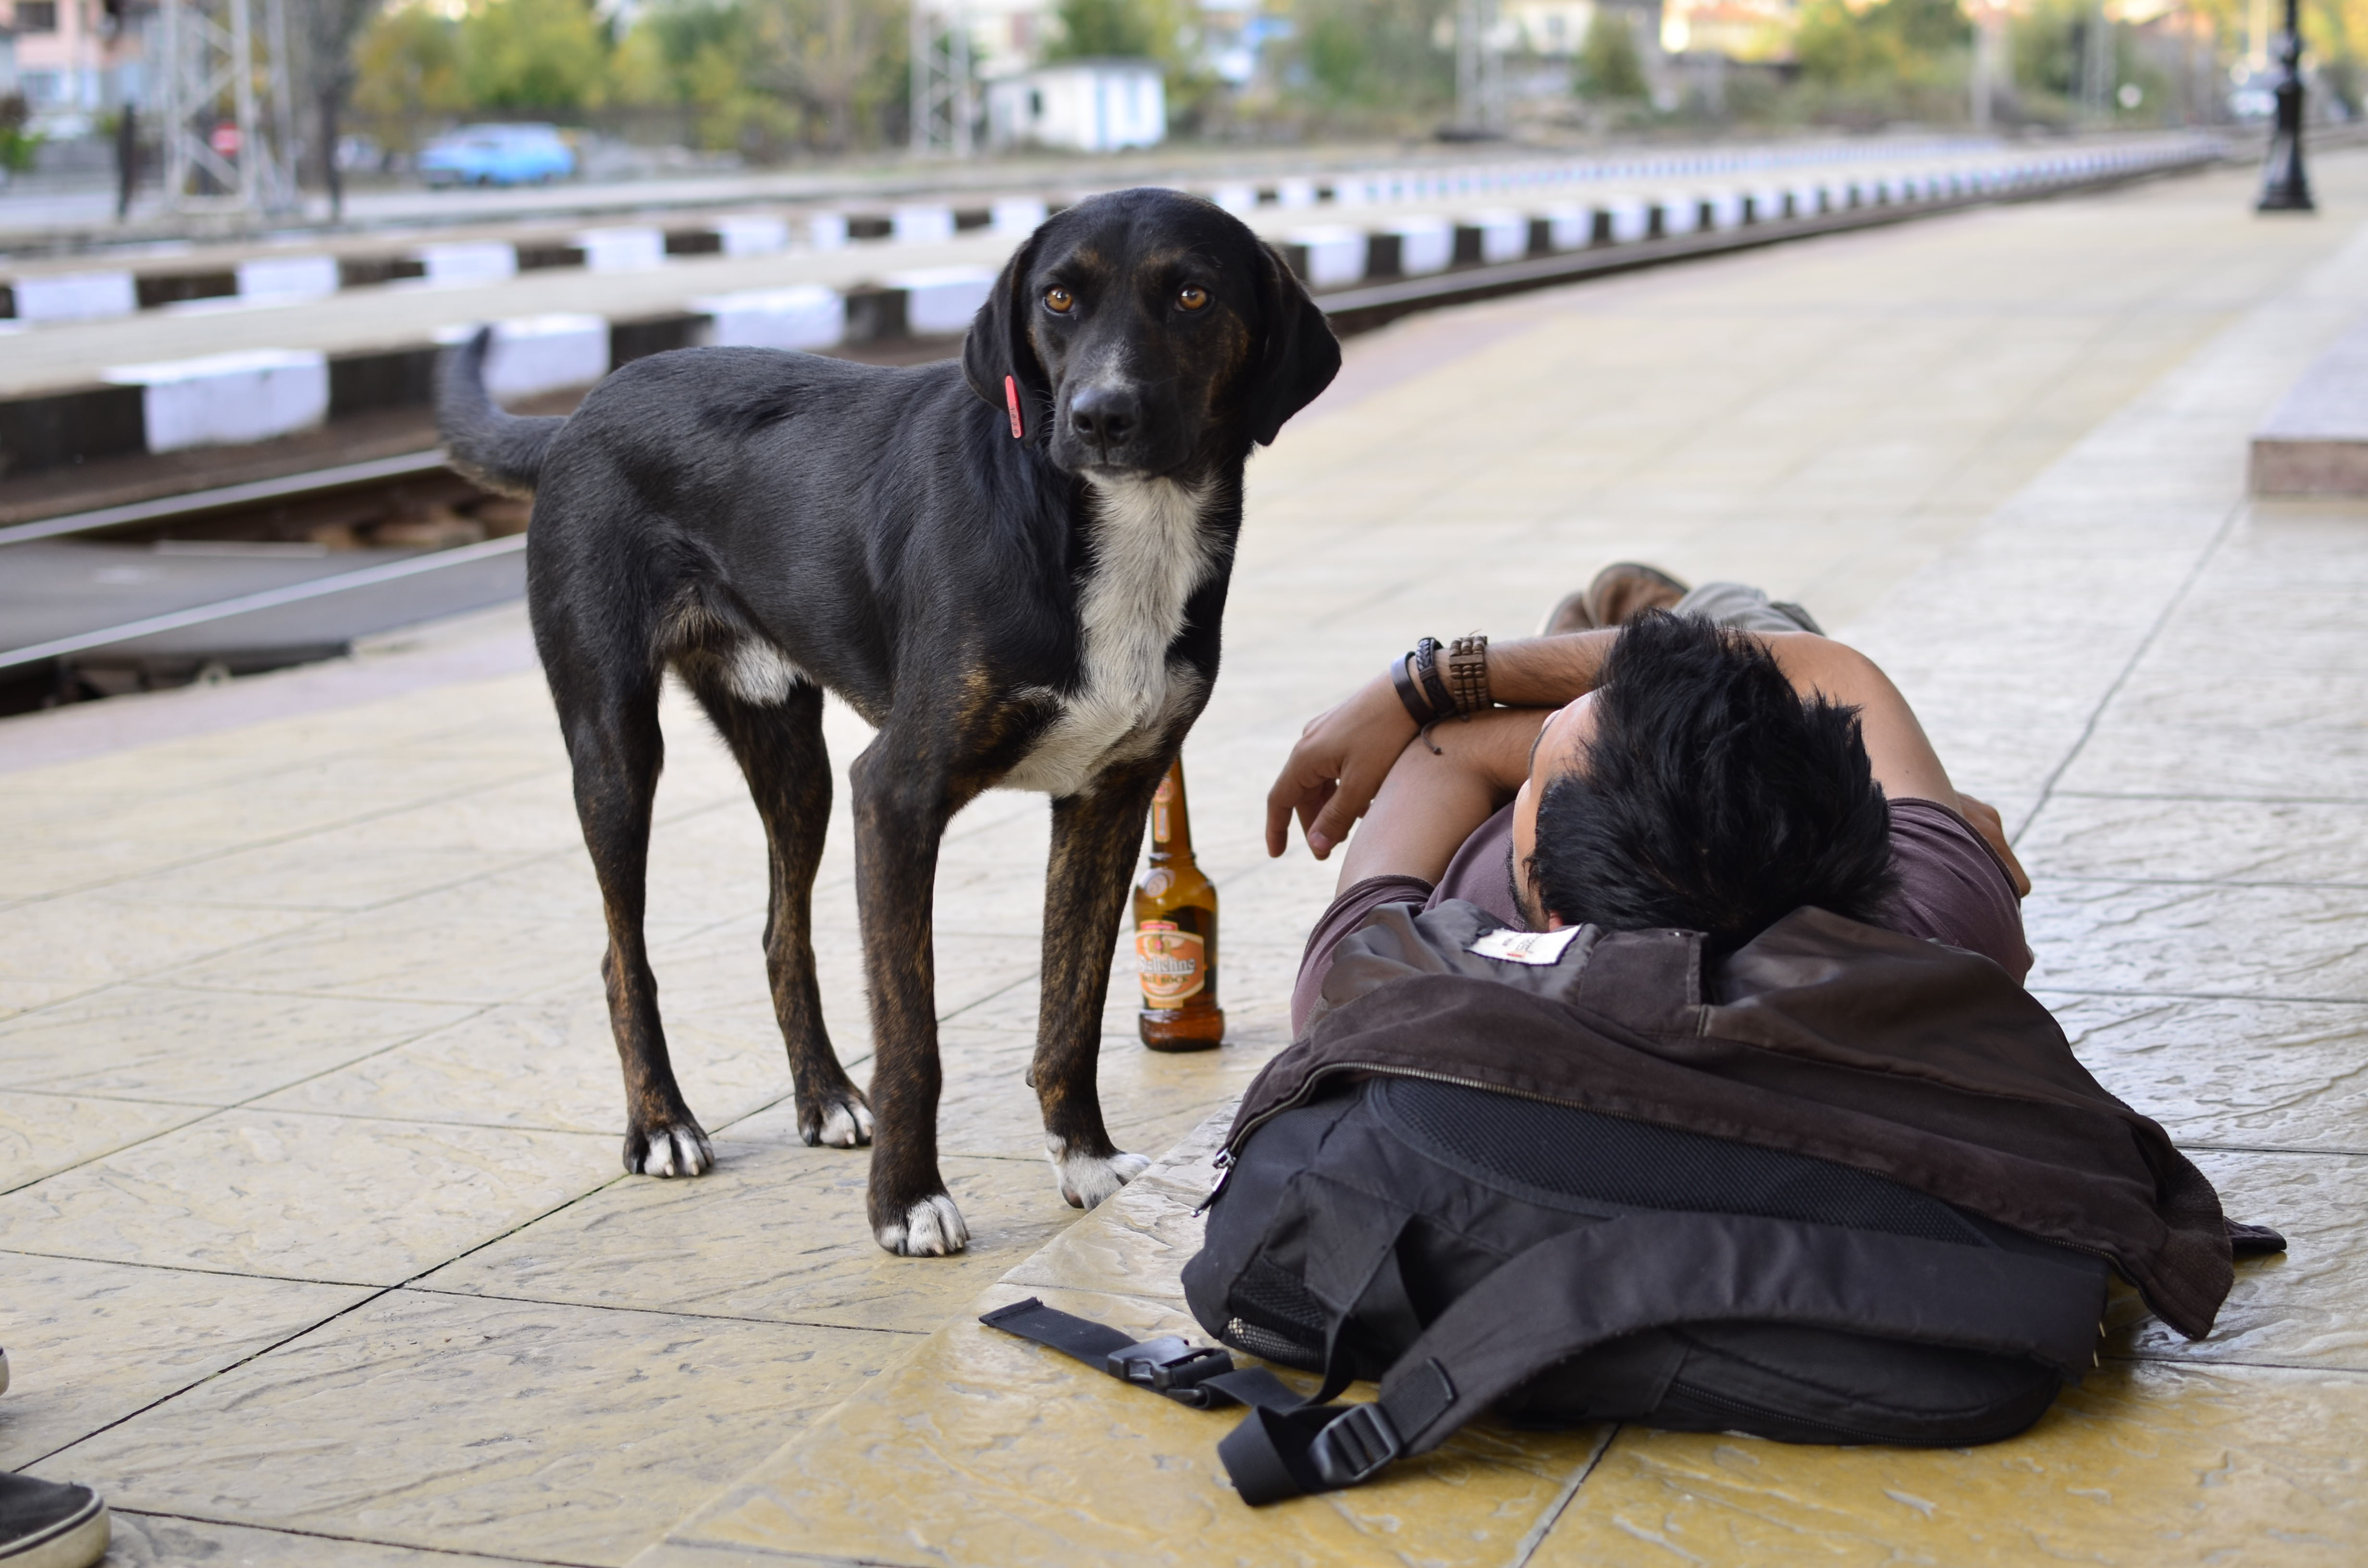 Minden állomásnak van legalább egy kutyája, aki, akik tudják már a menetrendet és várják az embereket és a finom falatokat.